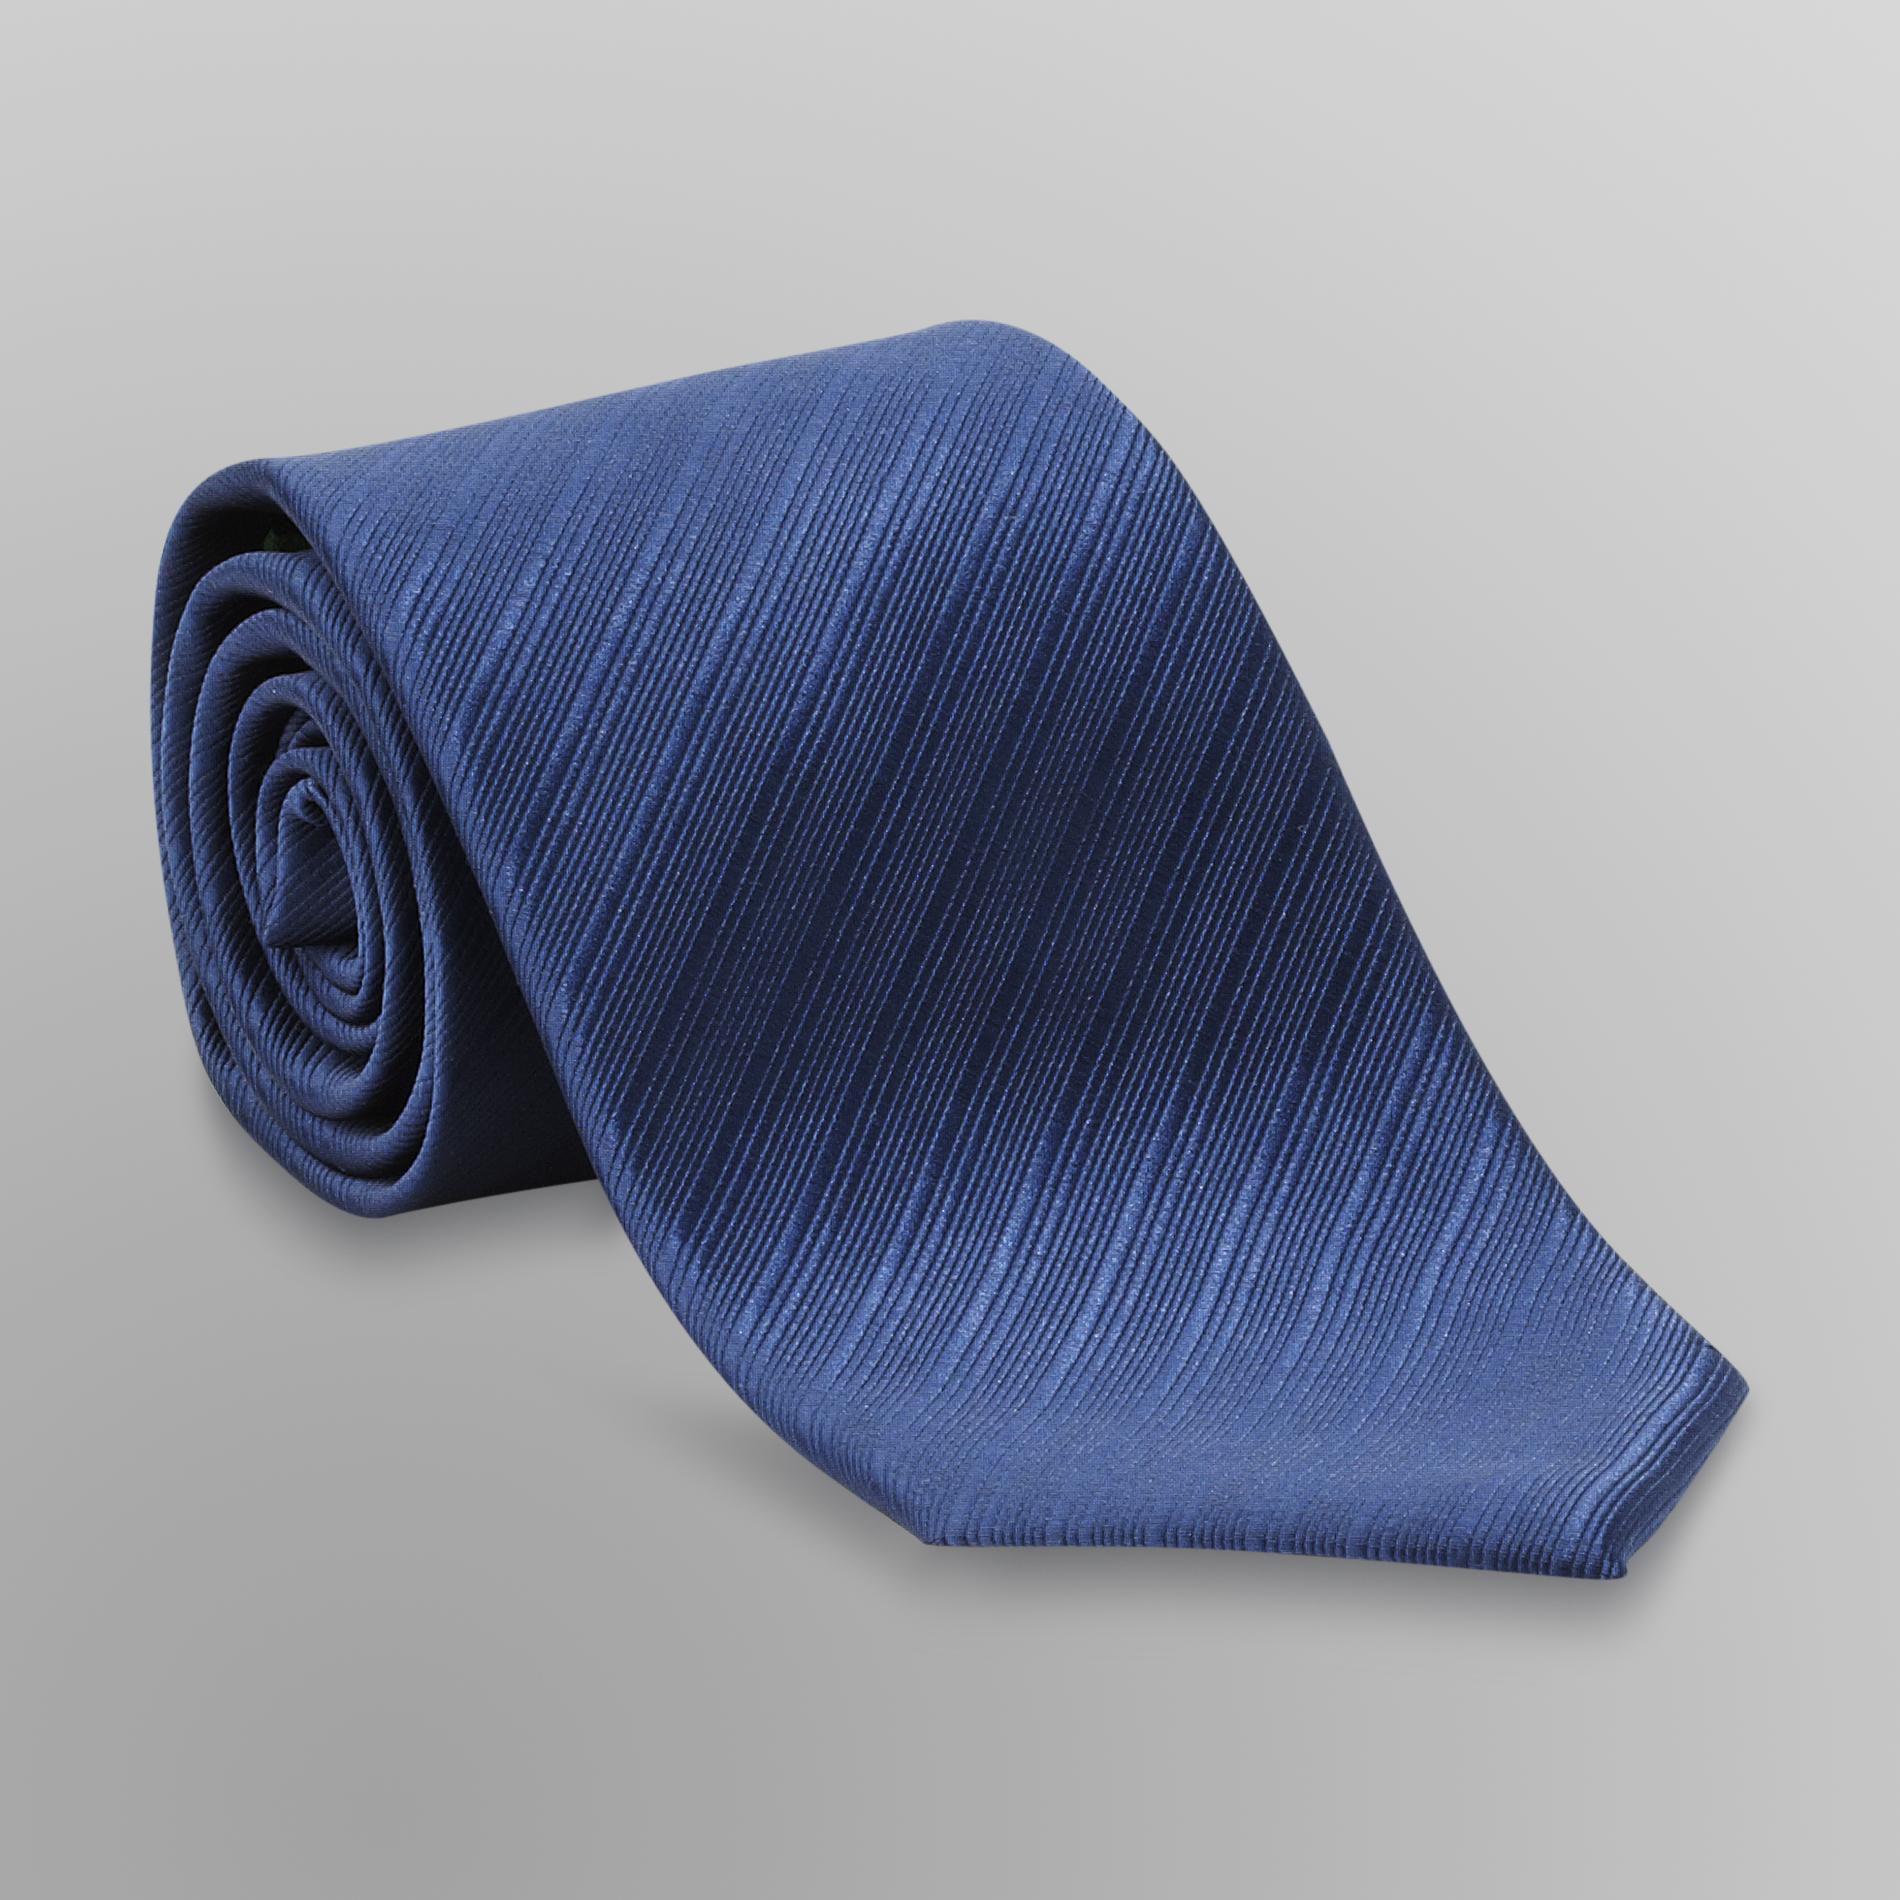 David Taylor Collection Men's Solid Satin Necktie